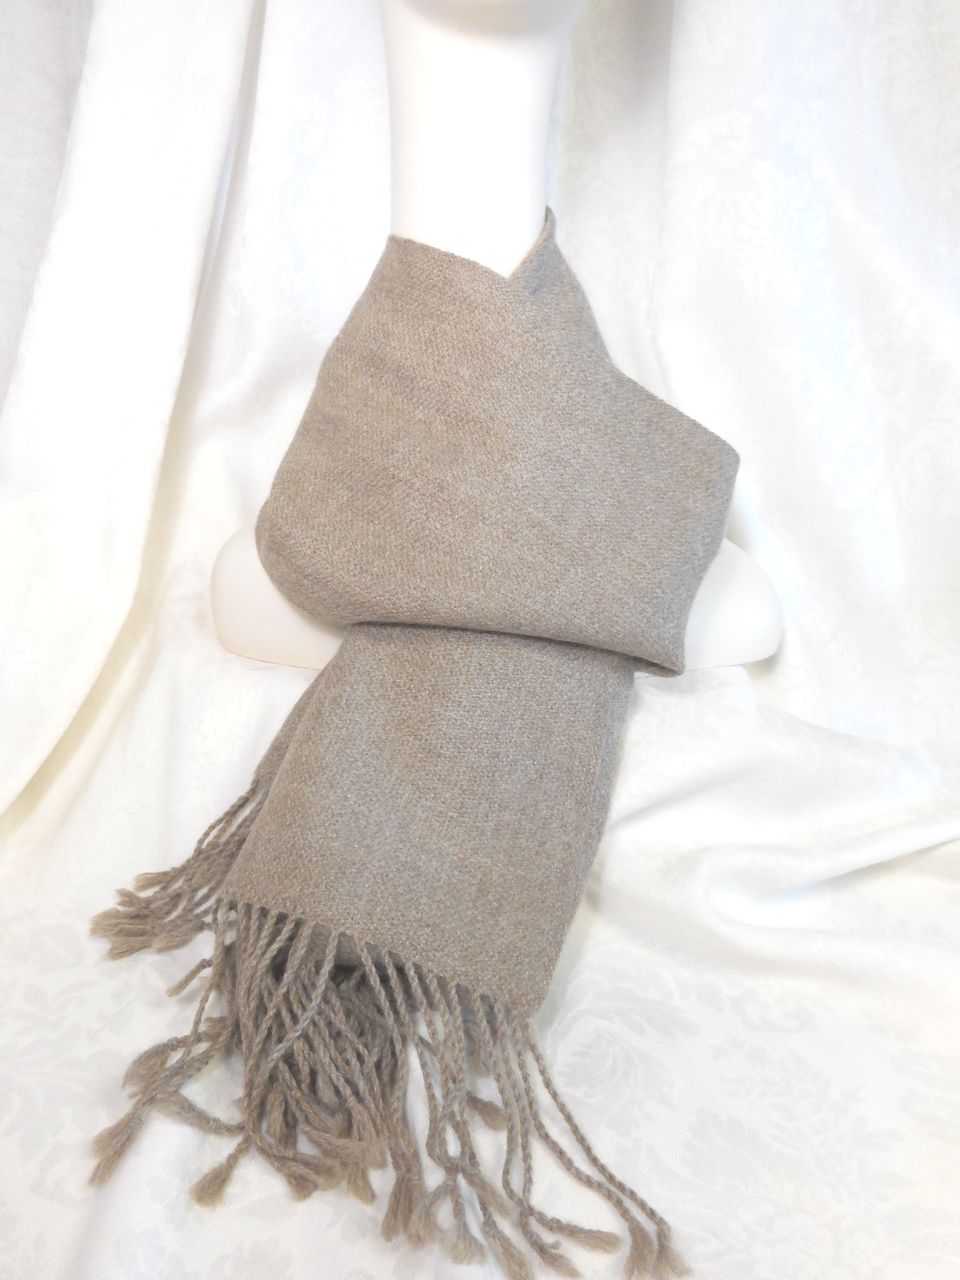 écharpe tissée / wide woven scarf